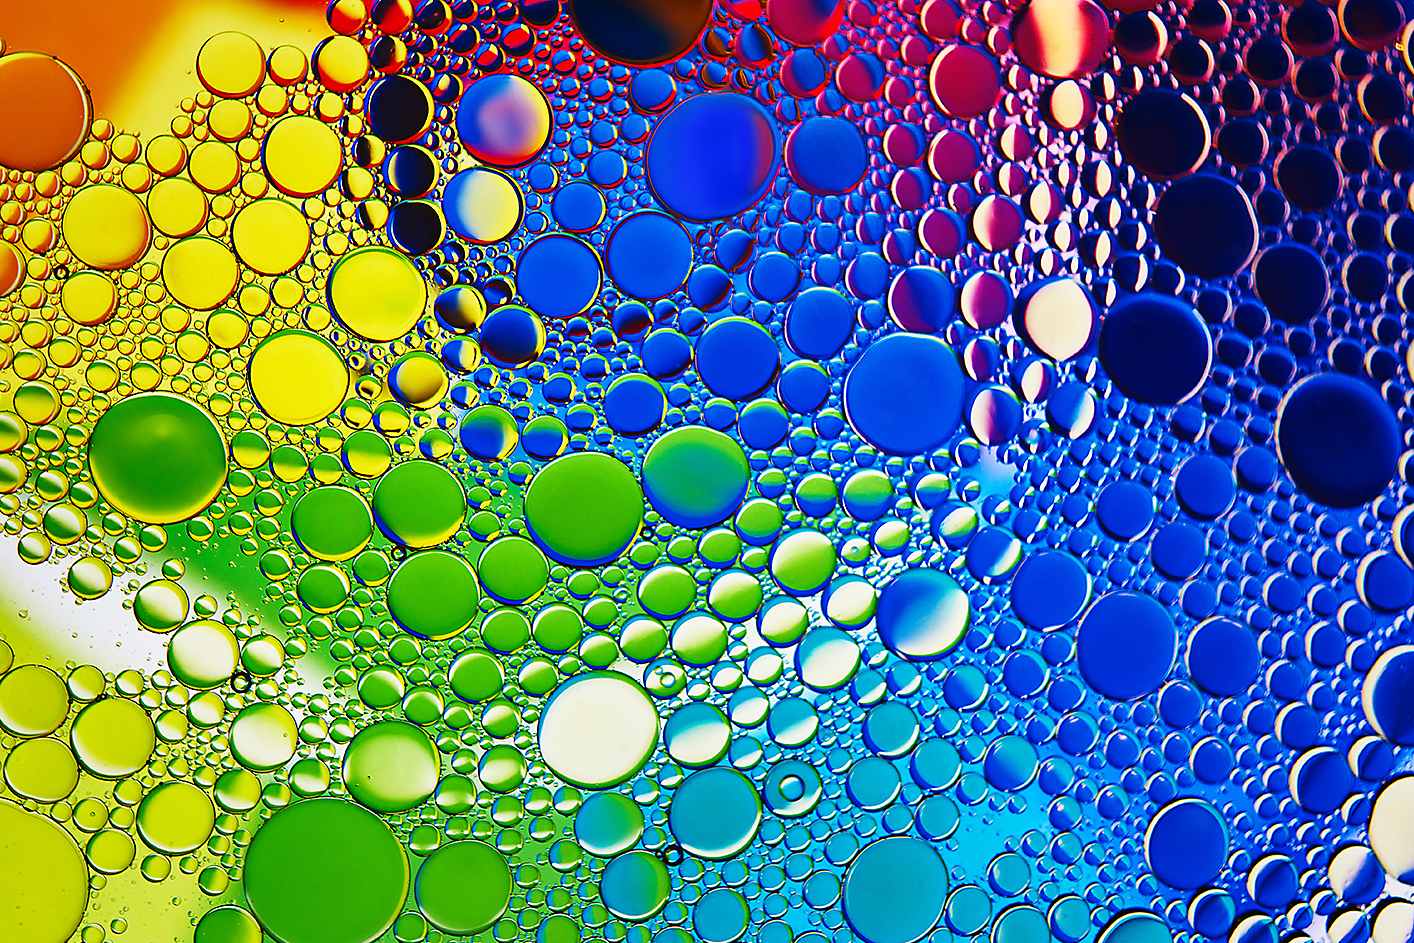 Екранна снимка, показваща многоцветни мехурчета в различни нюанси и размери